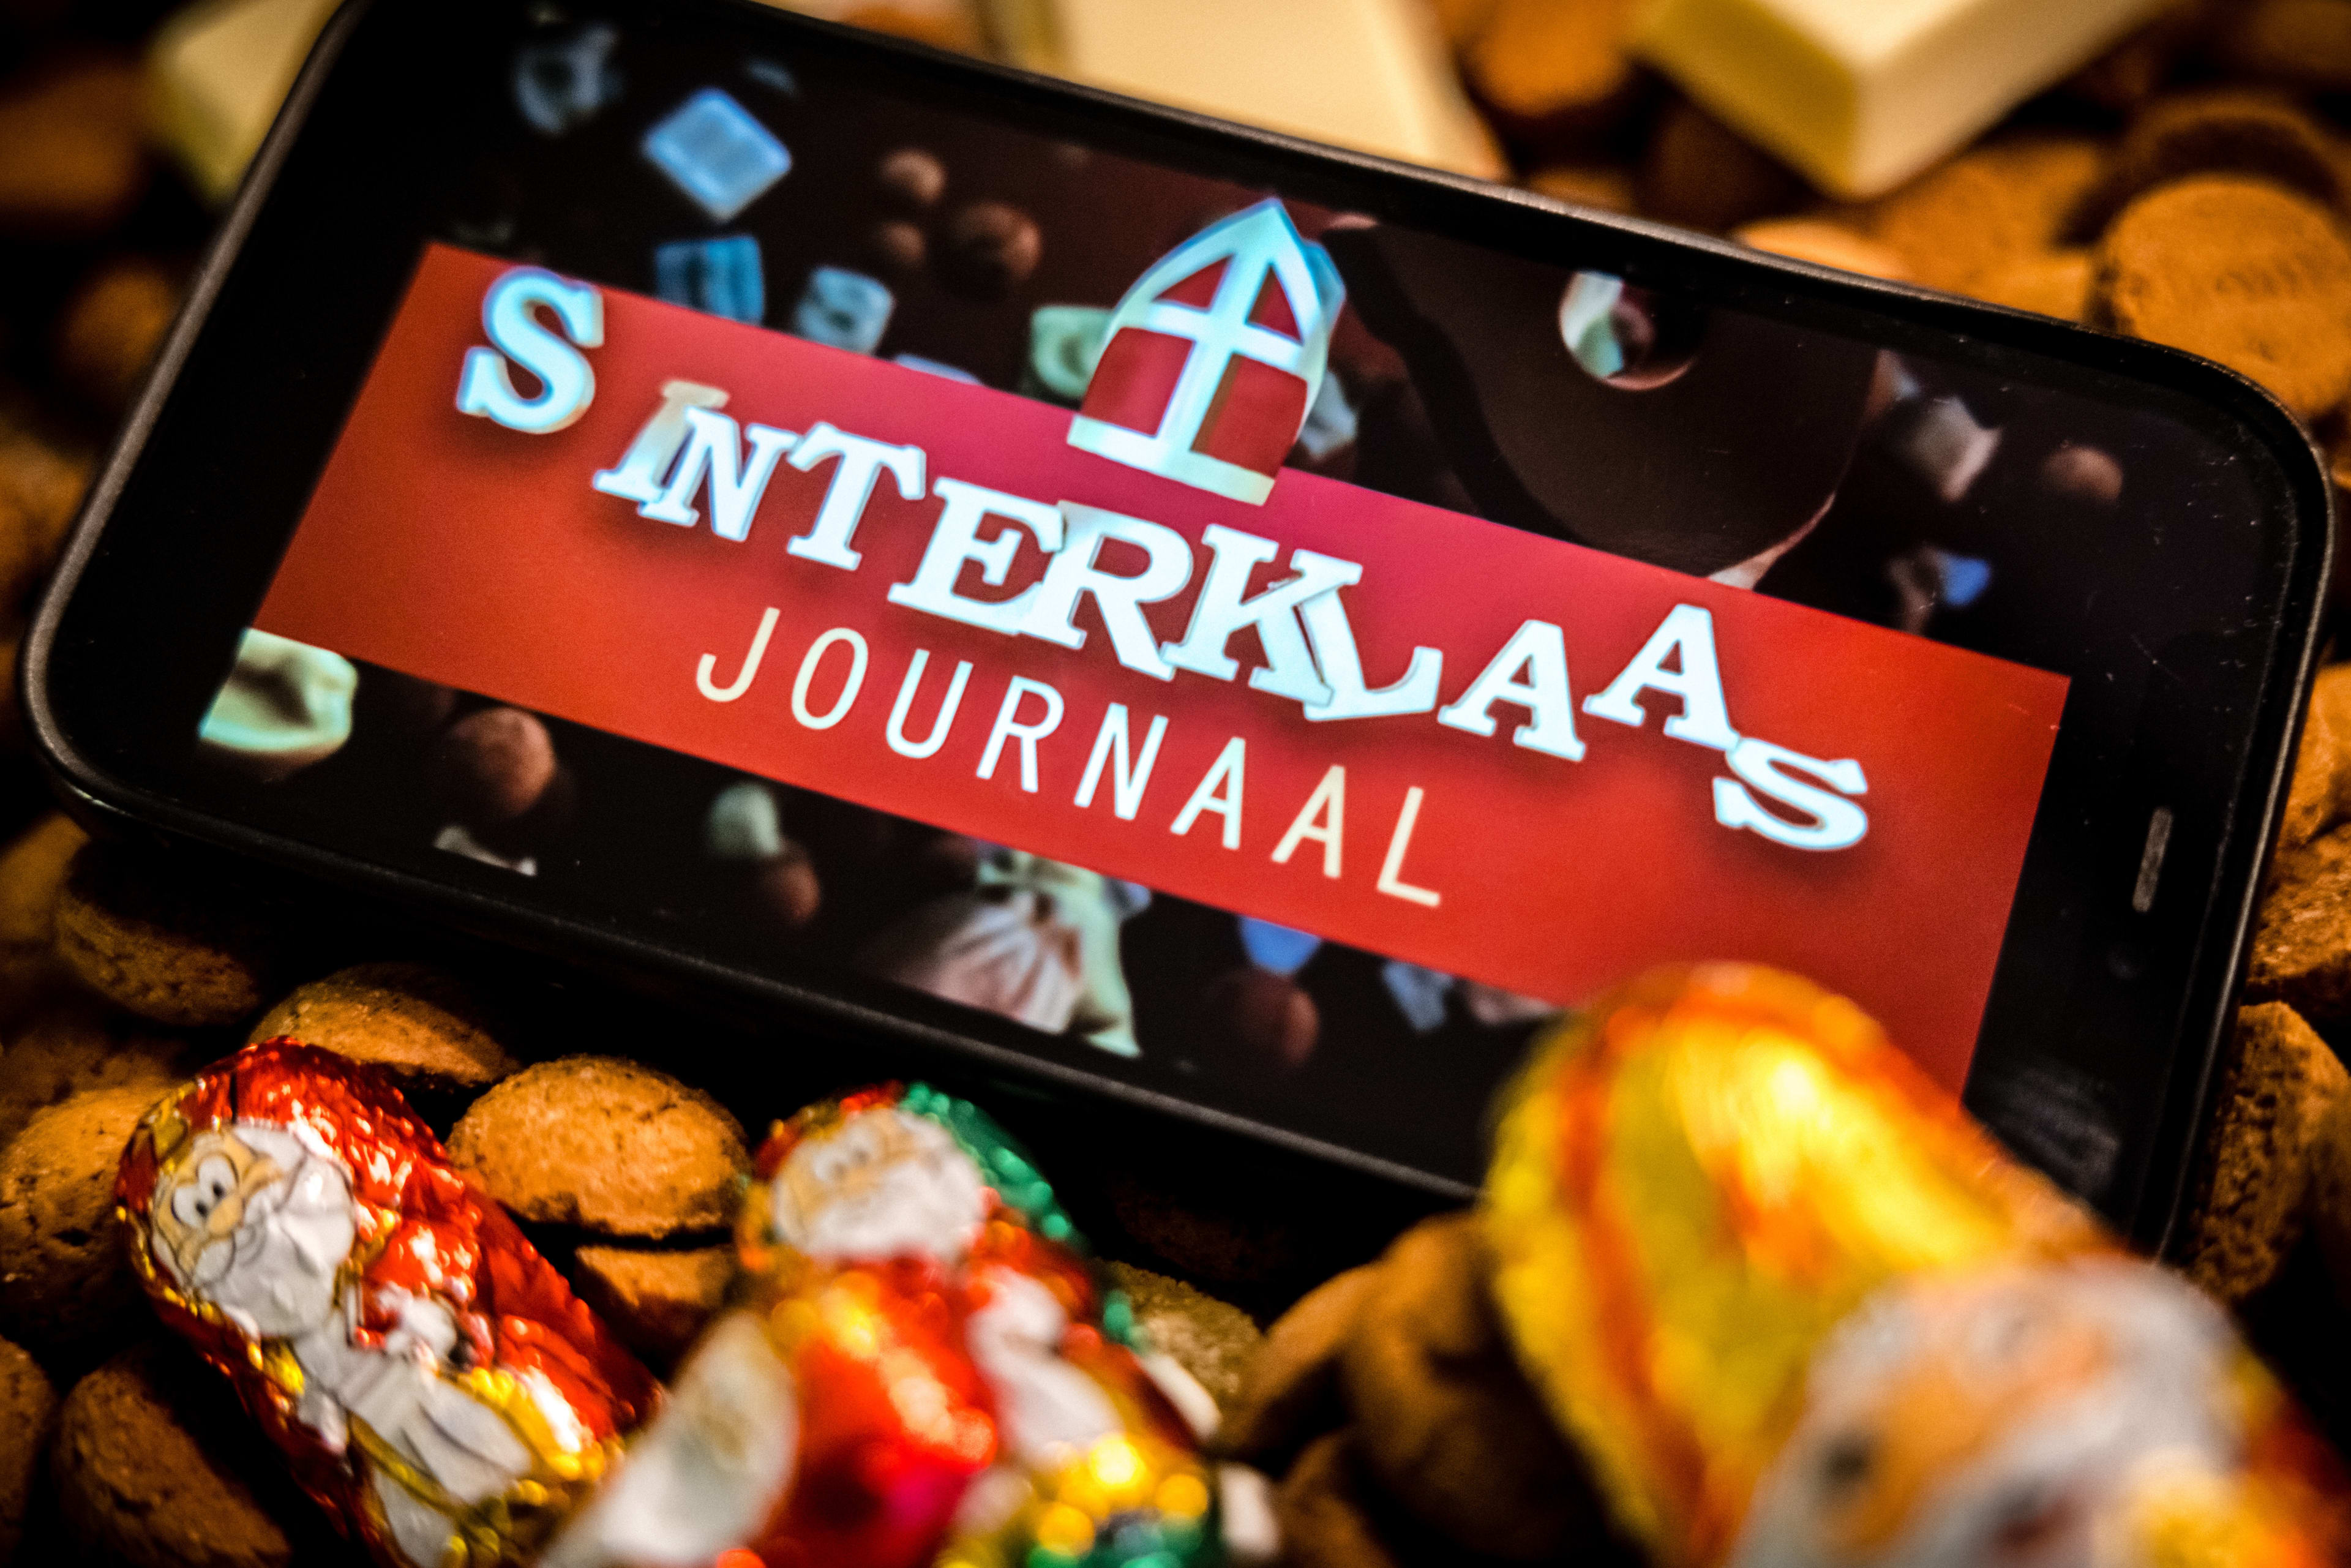 Sinterklaasjournaal voor tweede dag op rij best bekeken tv-programma, weer een record